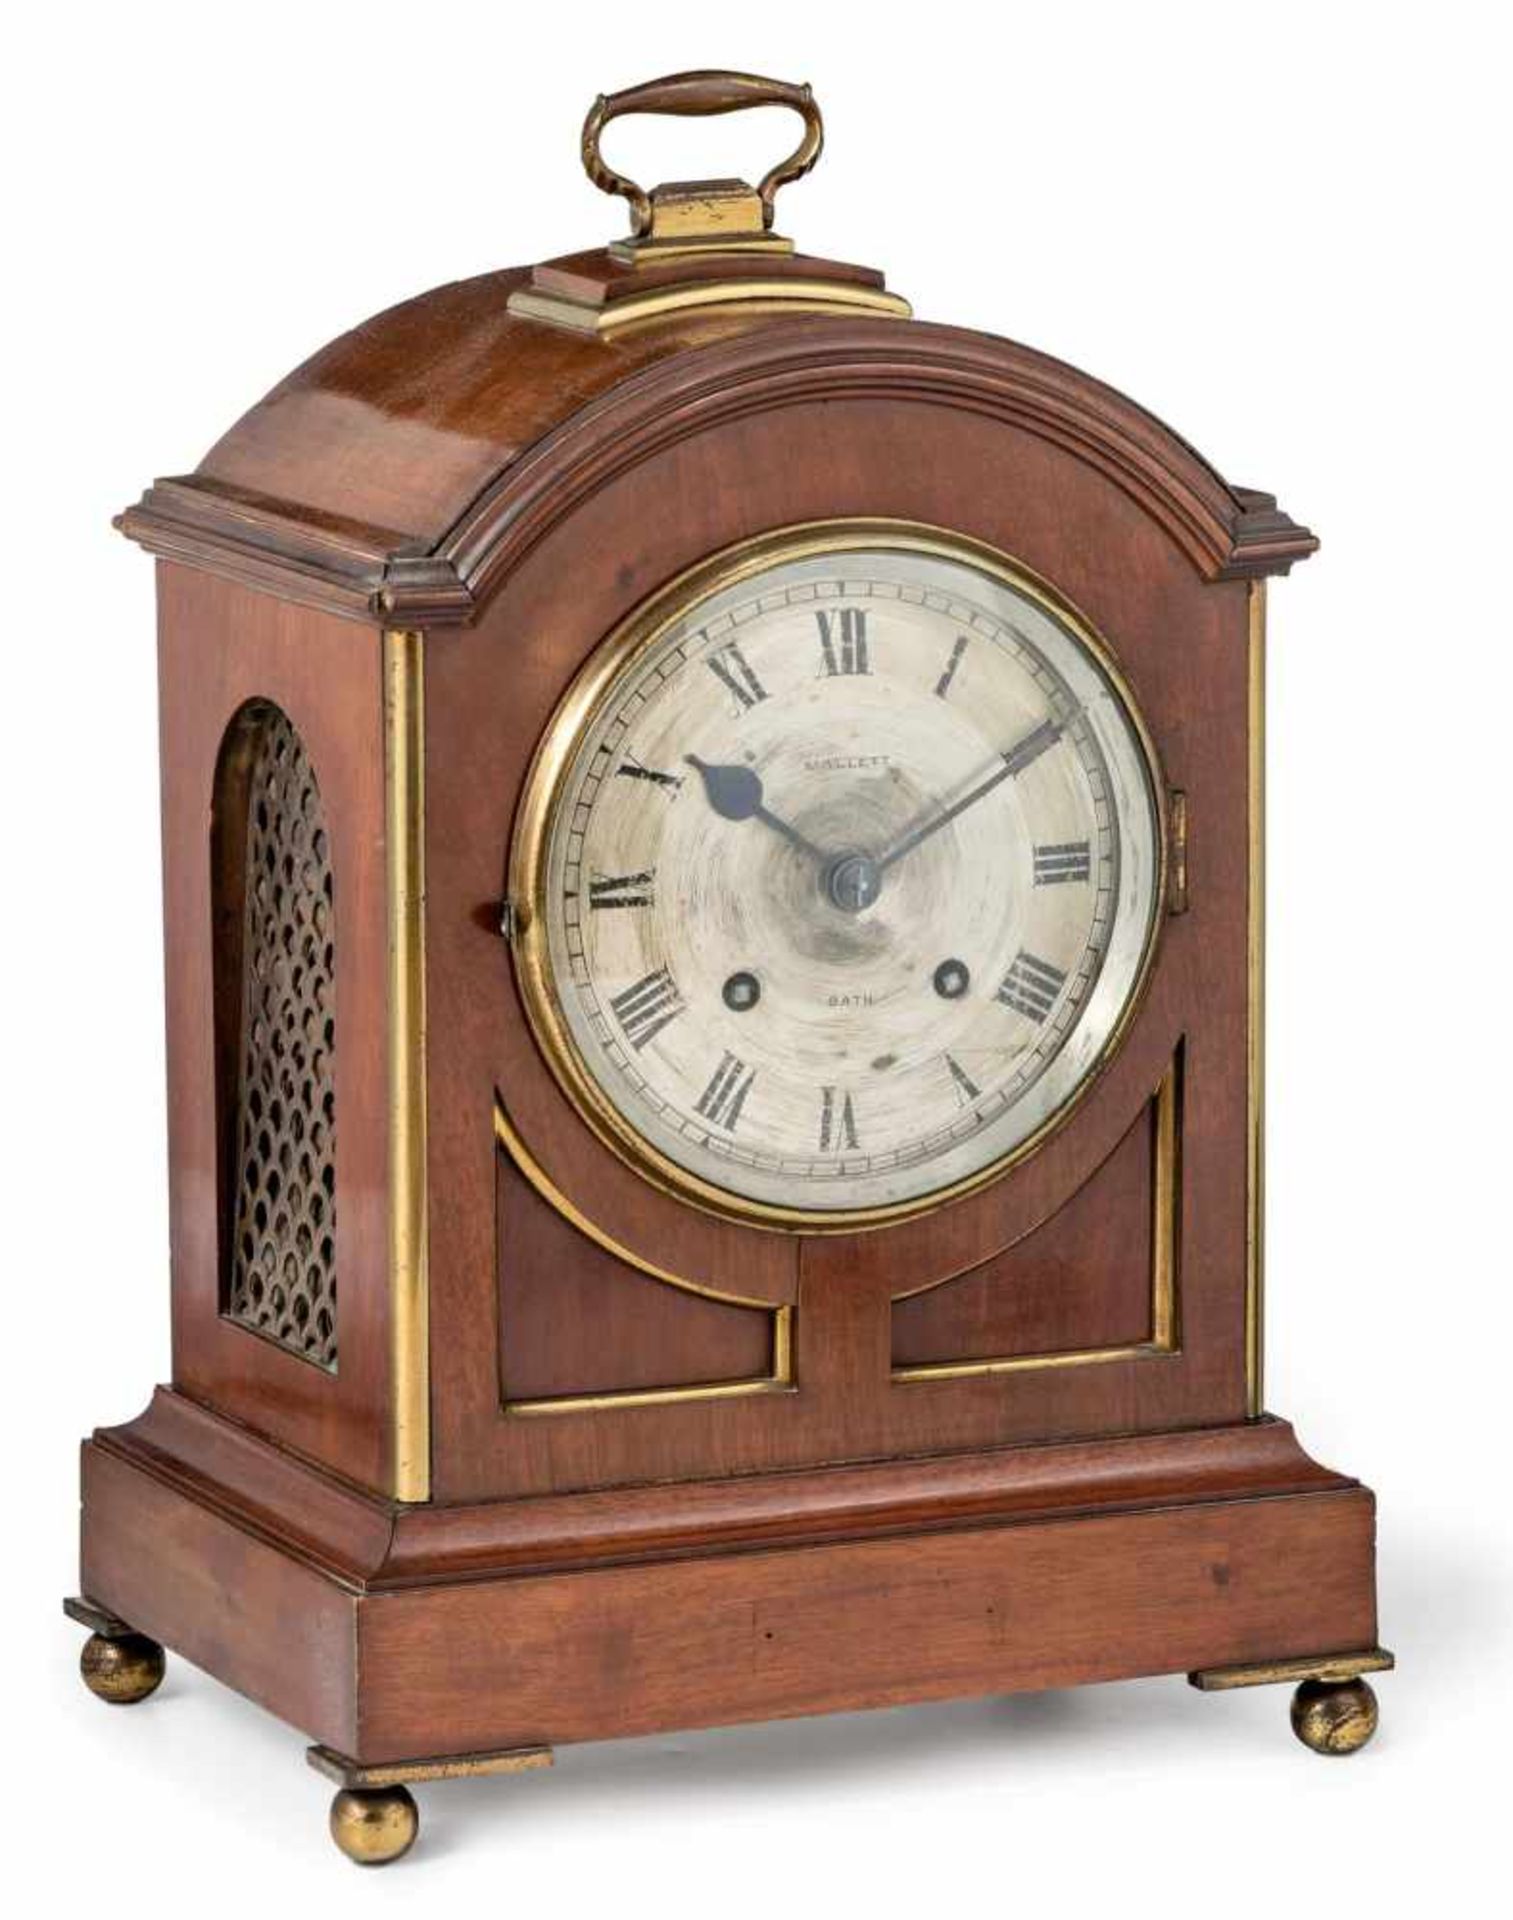 Bracket Clock "Mallet Bath"England, um 1900Mahagoni. Seitlich und hinten vergittertes